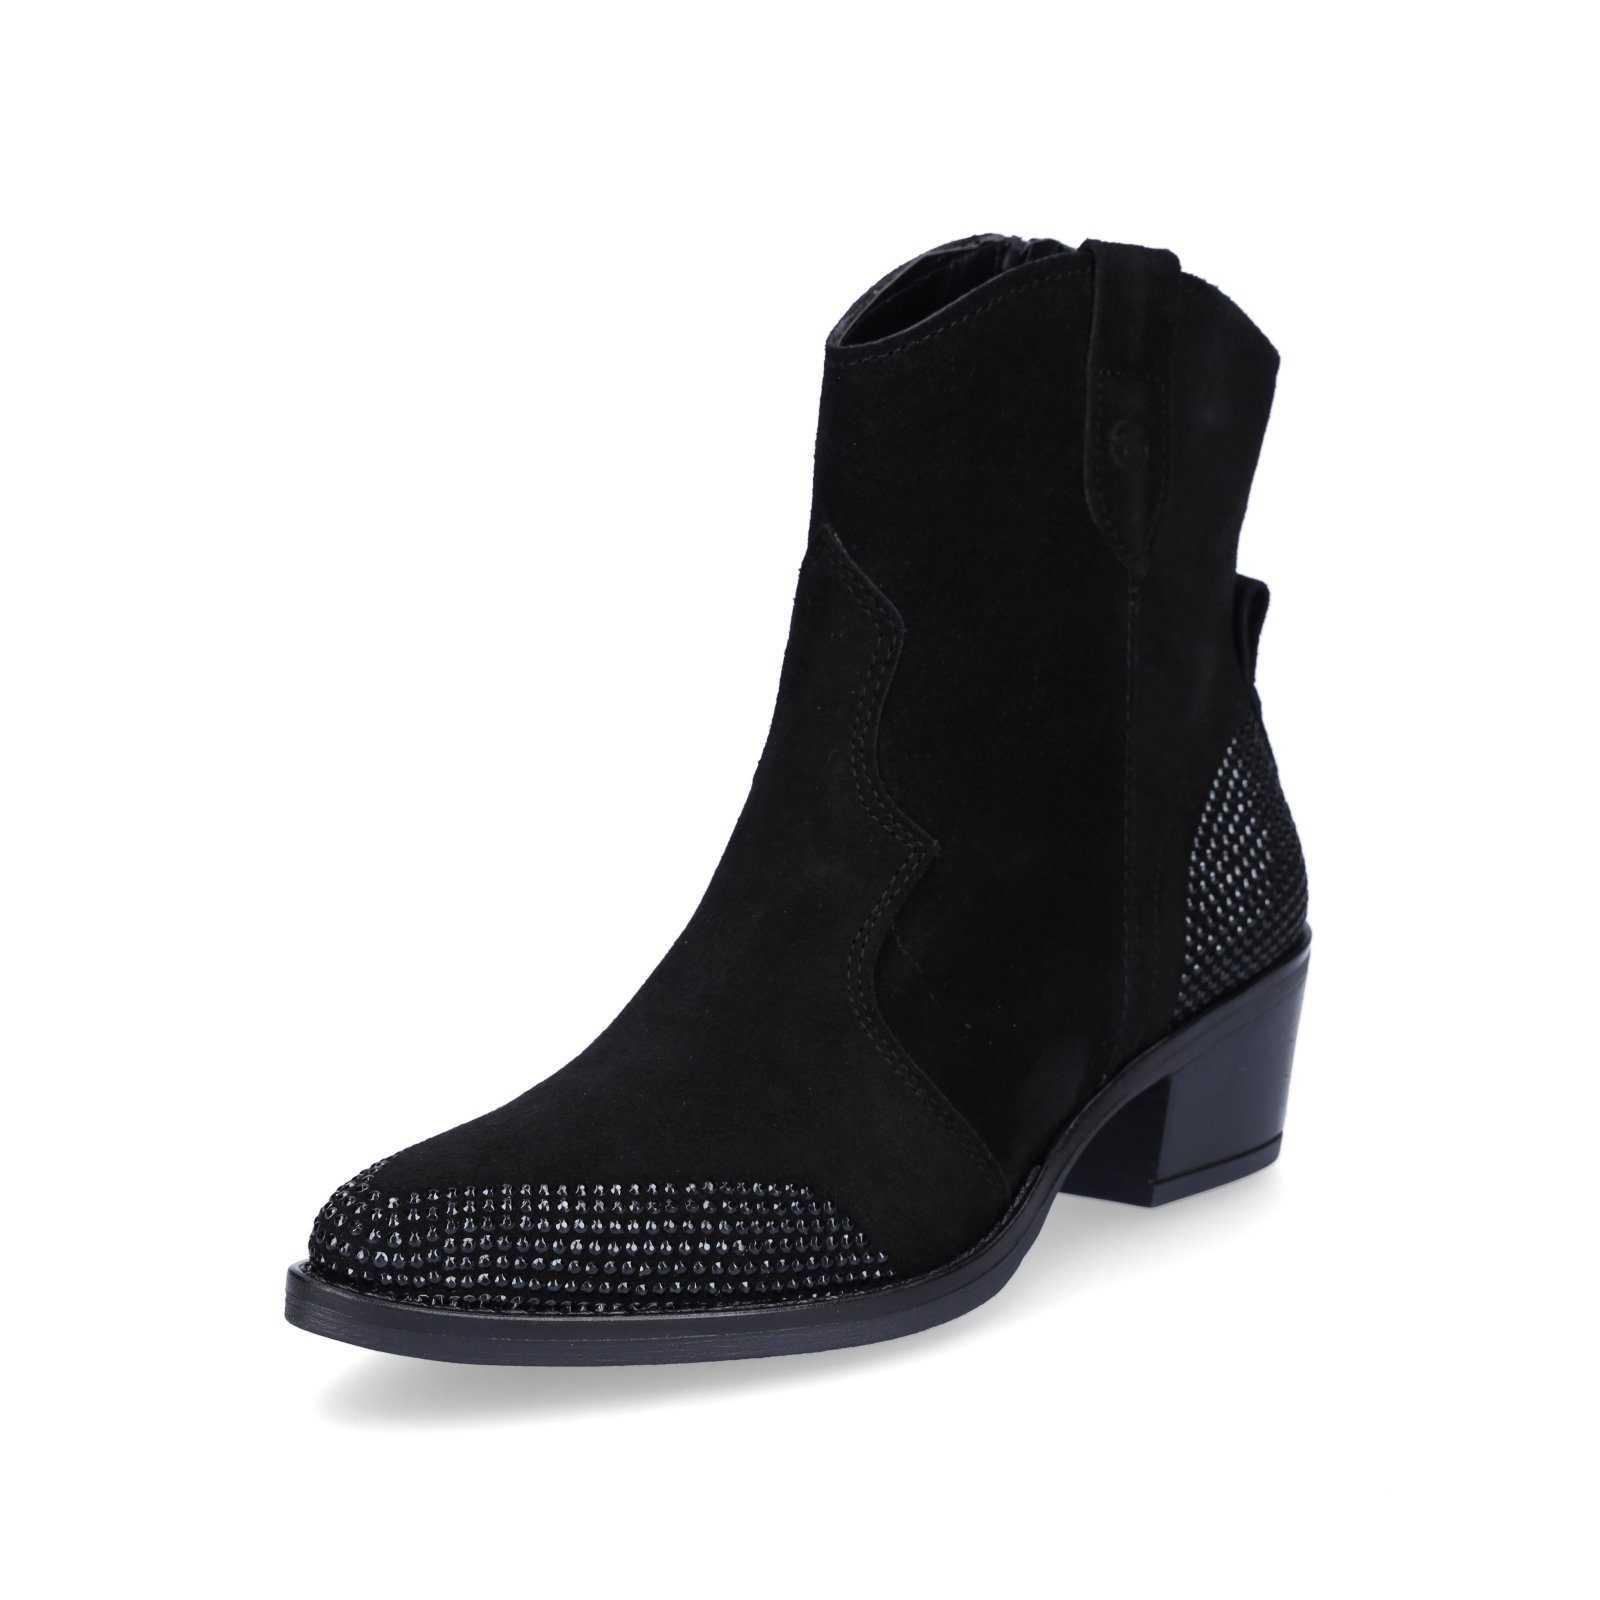 Tamaris Tamaris Damen Stiefelette schwarz Stiefelette, Cowboy-Style,  wertiges Leder, Comfort Lining und Touch-It Fußbett